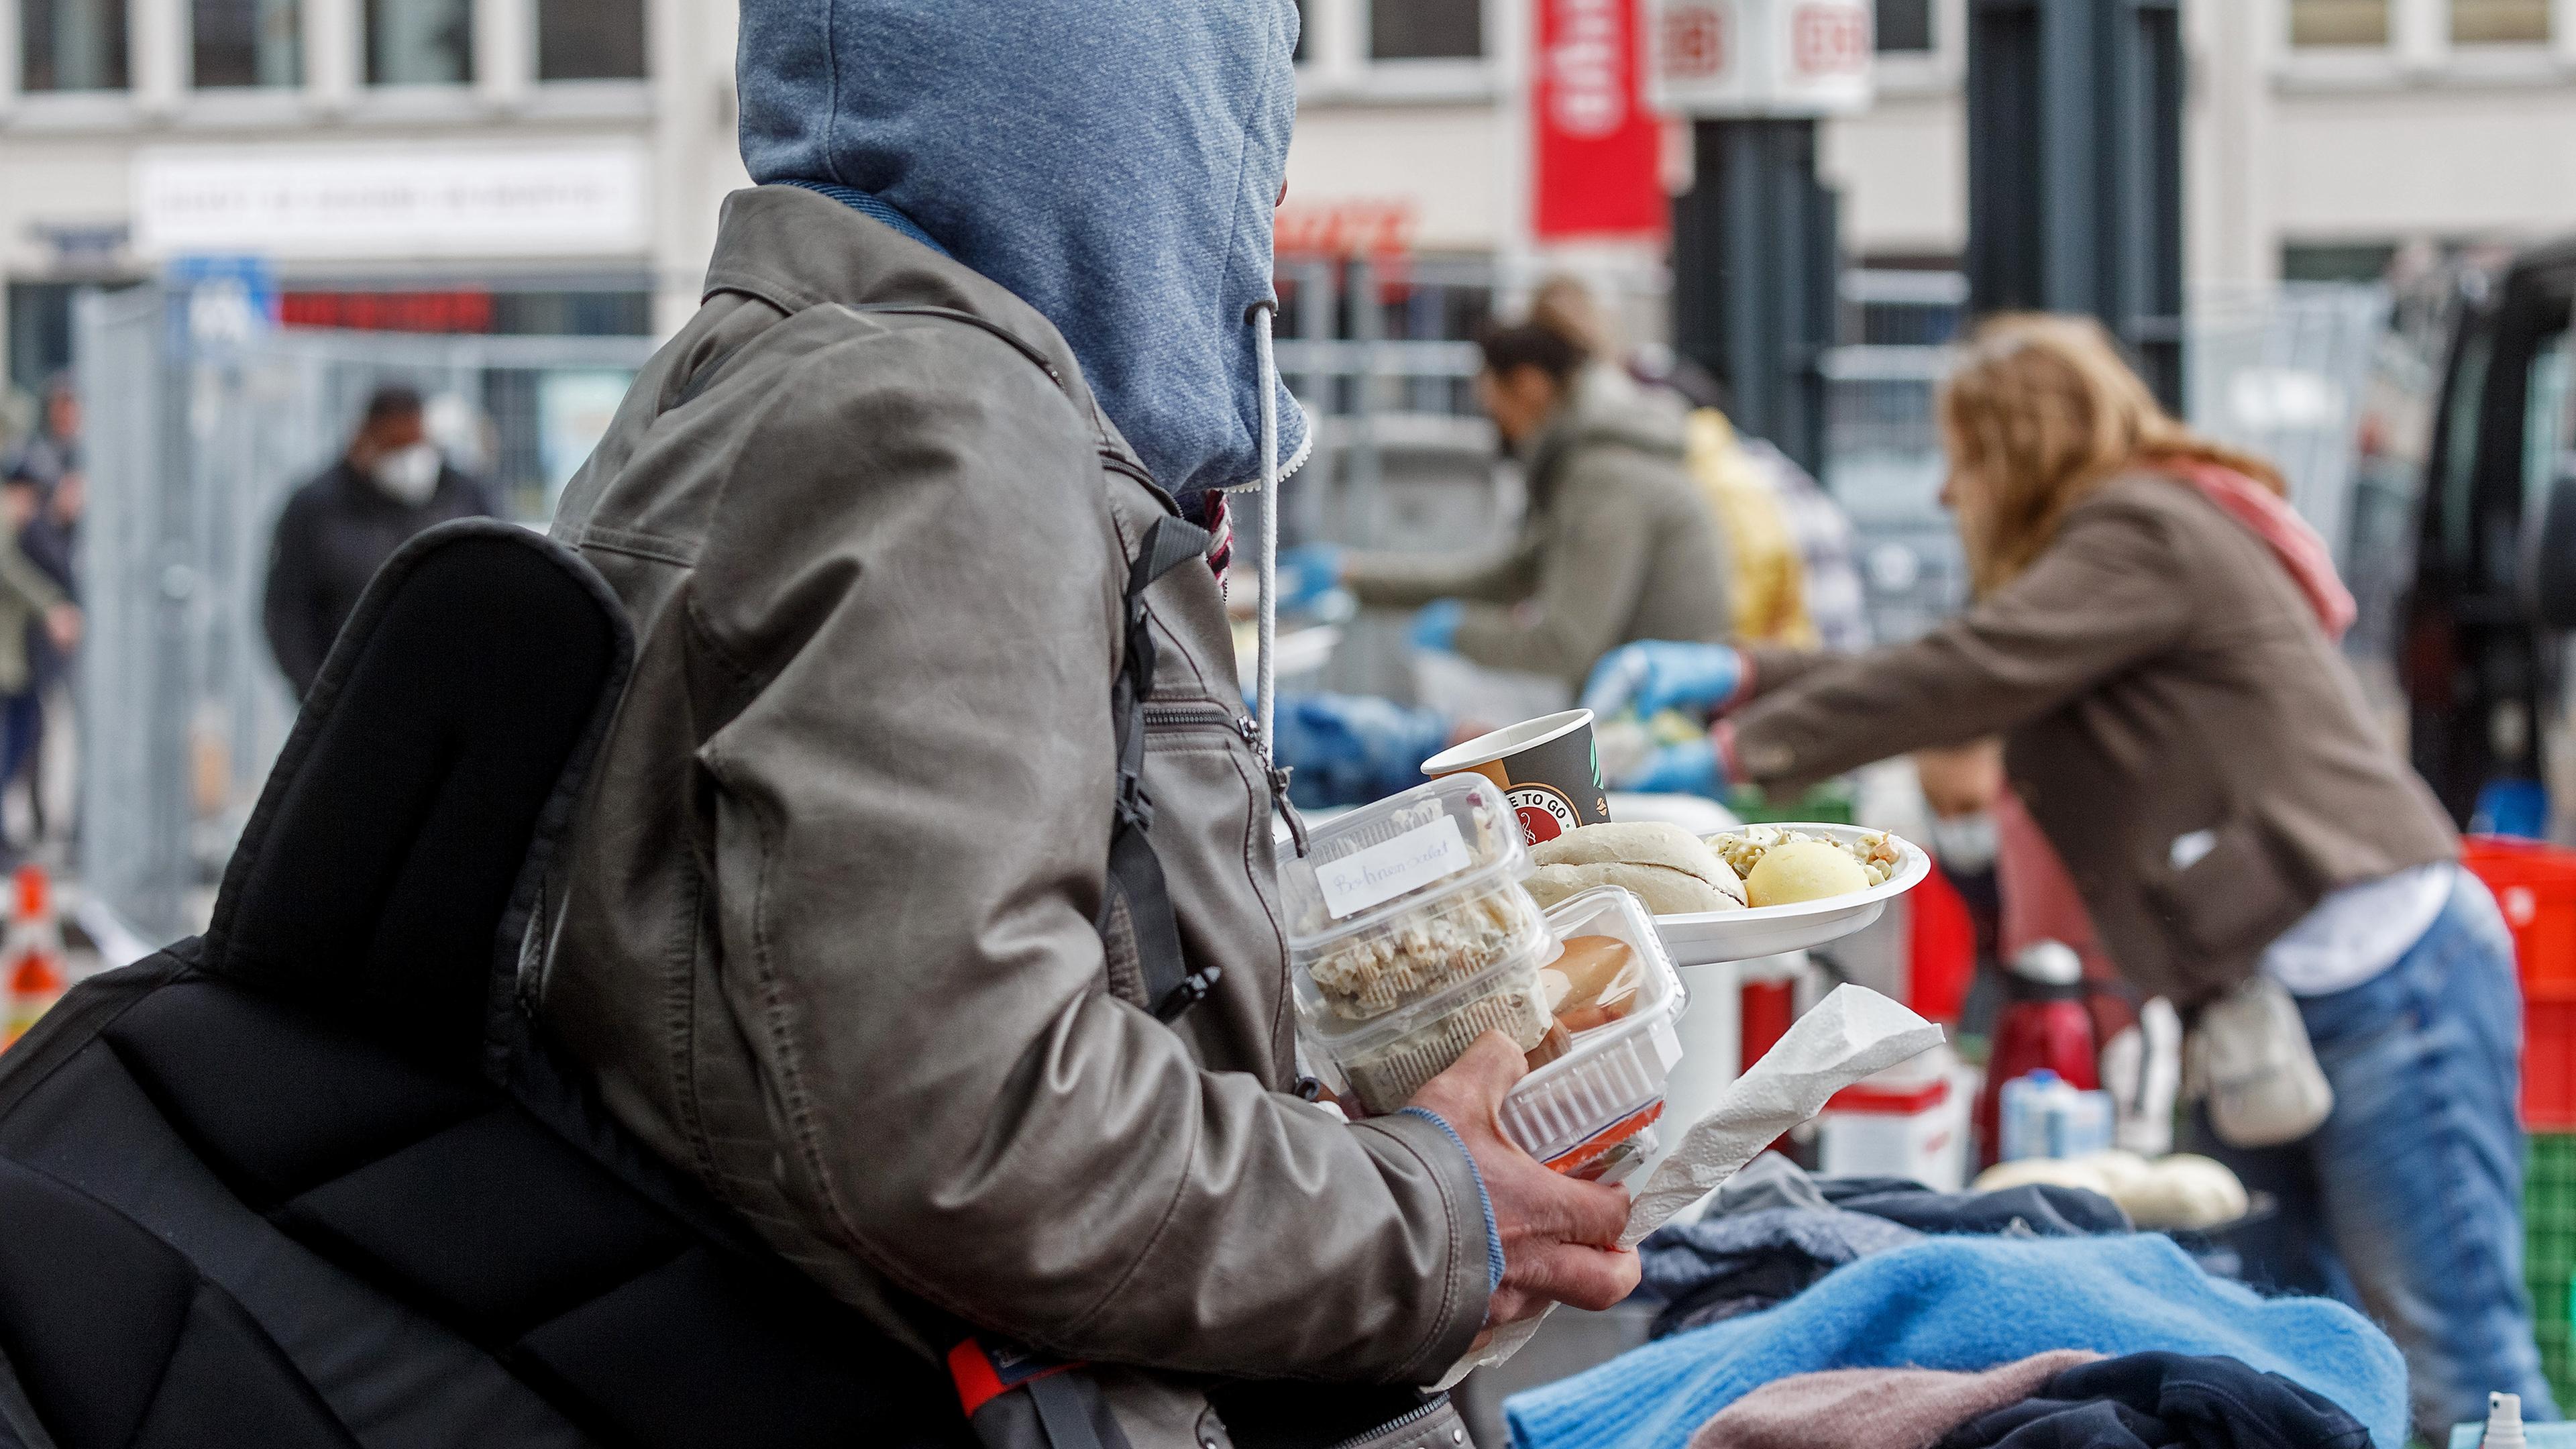 Essens- und Kleidungsausgabe an Obdachlose in Hamburg